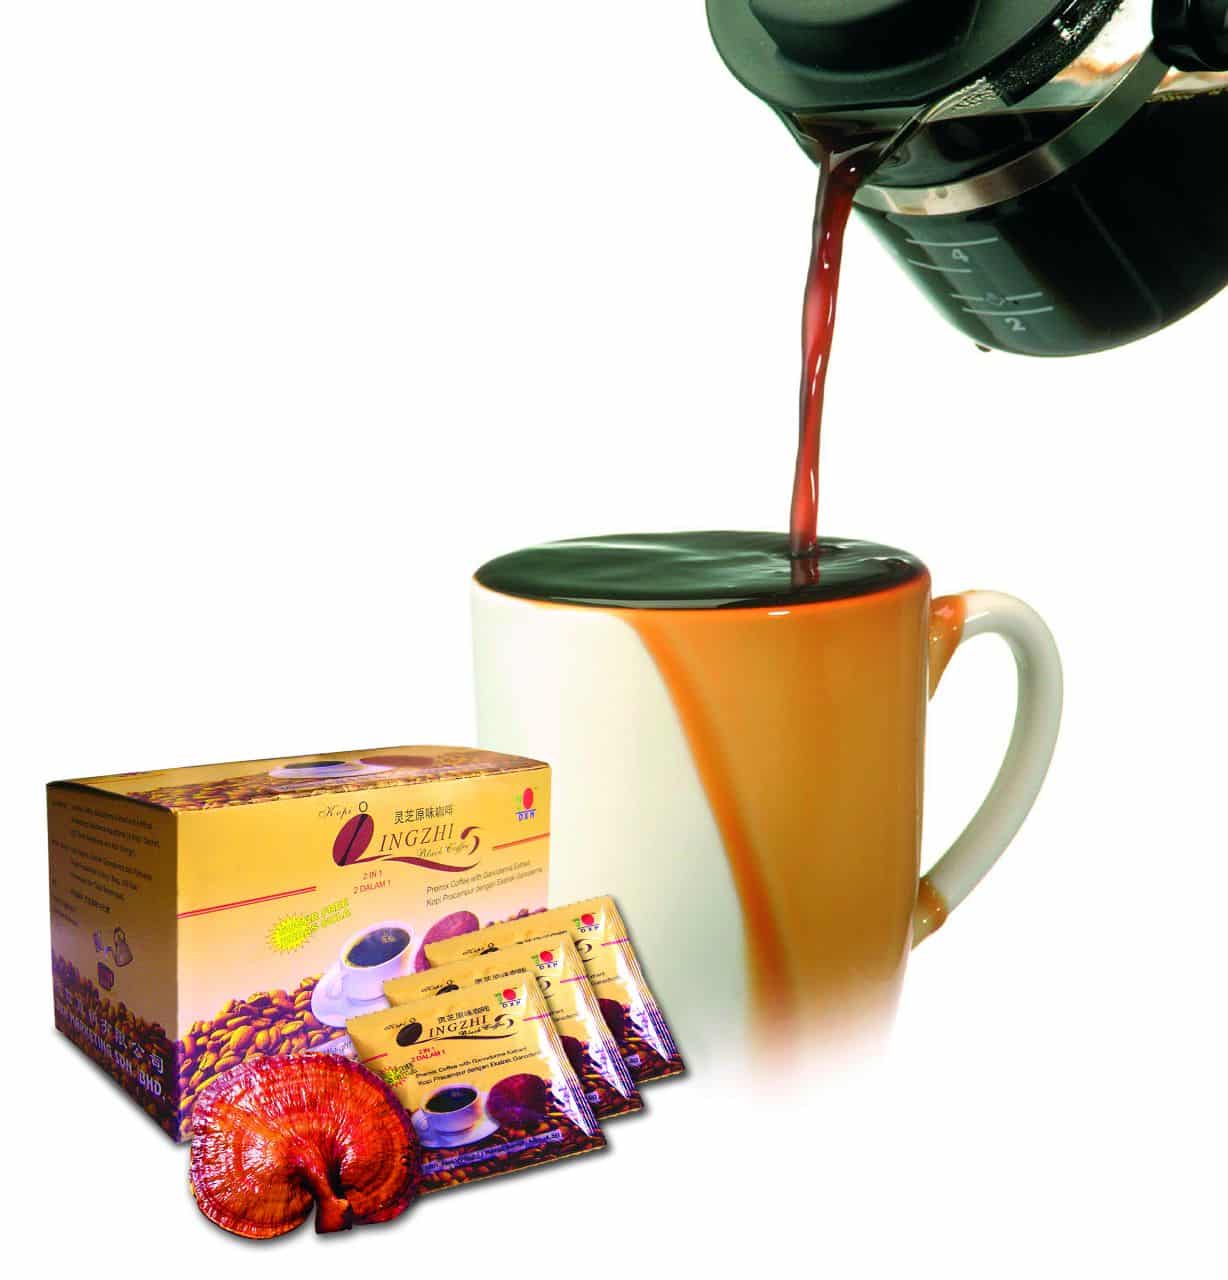 فوائد وأسرار قهوة لينجزي السوداء Dxn الصحية 2 في 1